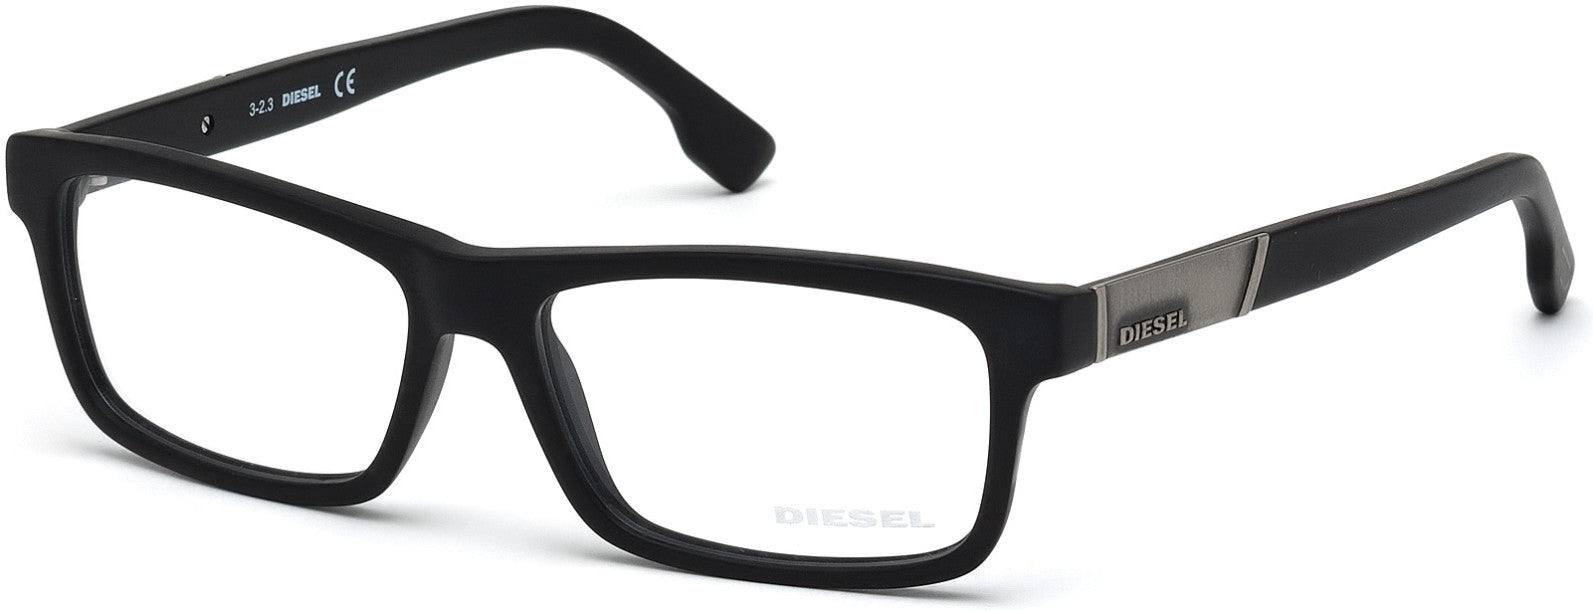 Diesel DL5090 Geometric Eyeglasses 002-002 - Matte Black